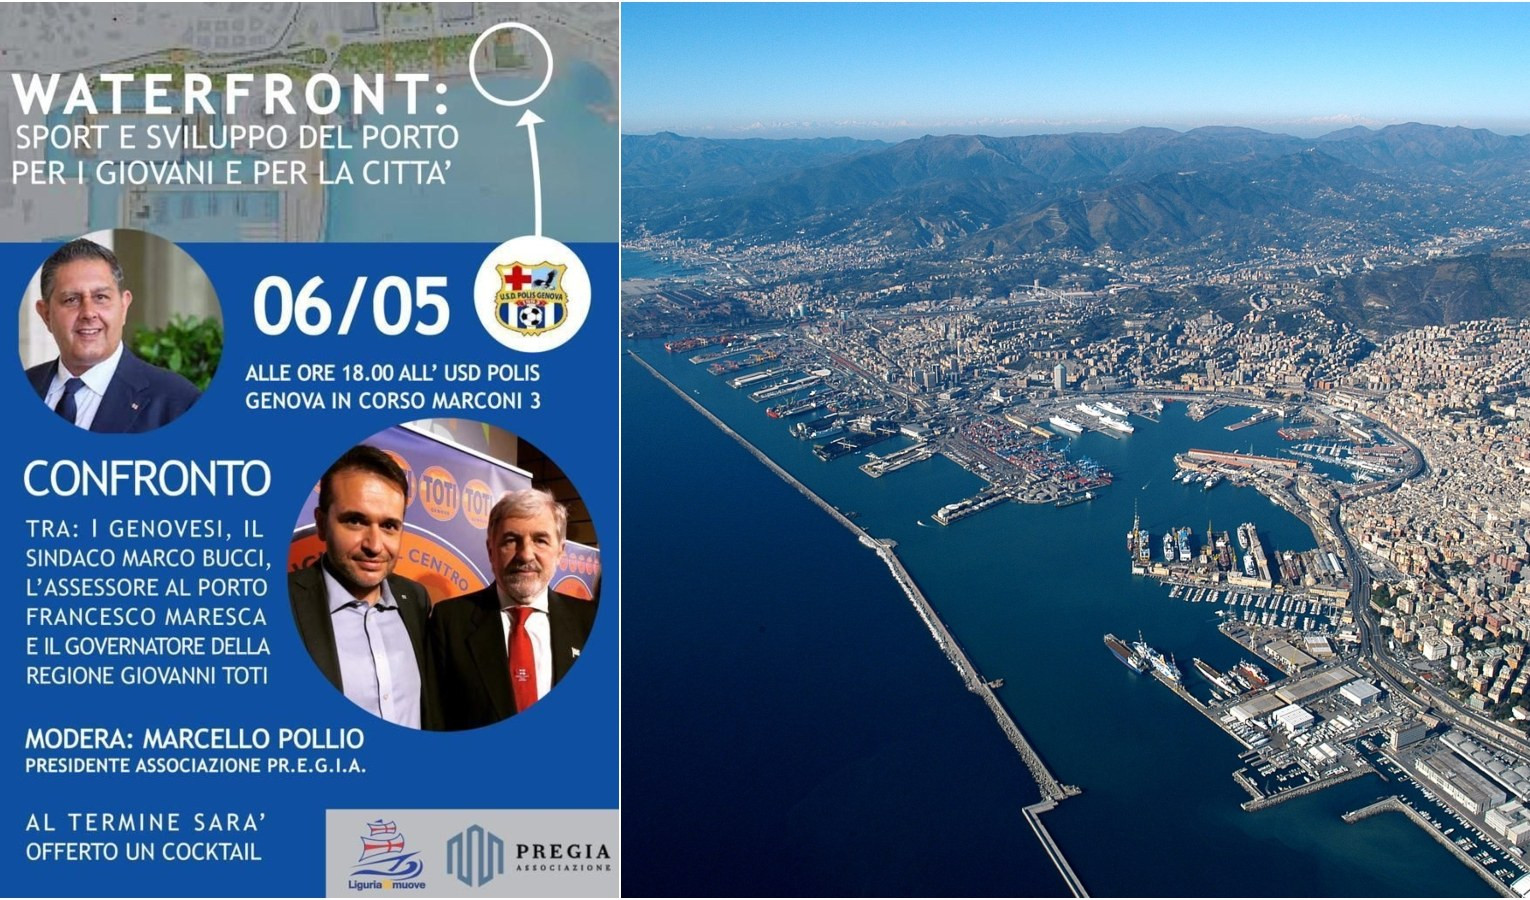 Genova tra waterfront, sviluppo del porto e sport: venerdì dibattito pubblico organizzato da Liguria si muove